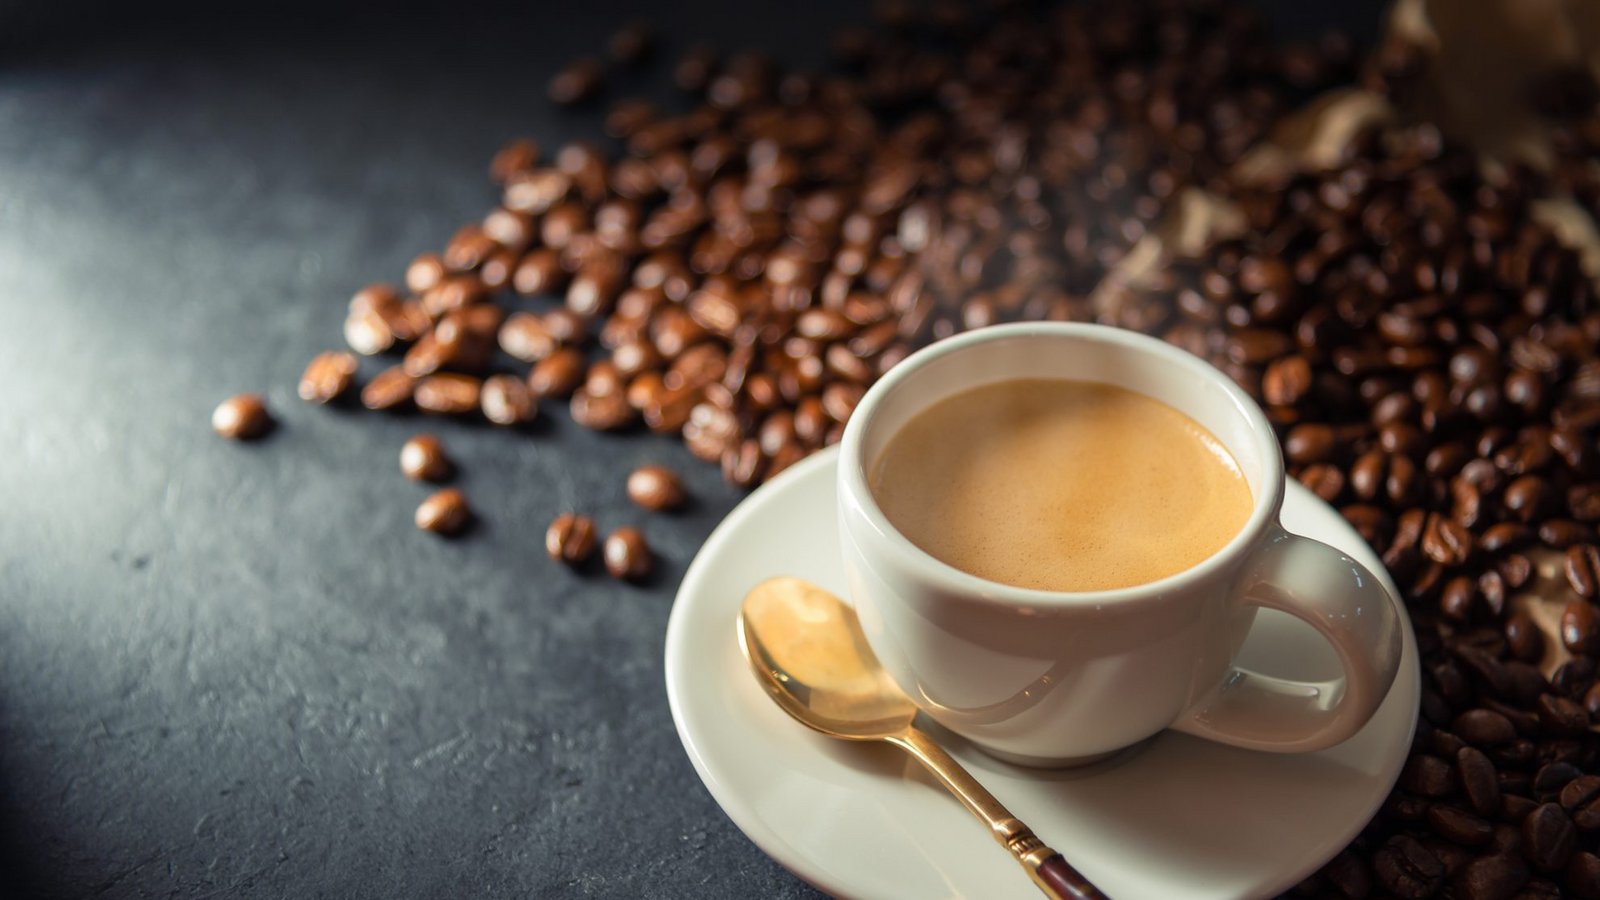 Kaffee ist ein klassisches Erwachsenen-Getränk. Doch ab welchem Alter darf man das Heißgetränk zu sich nehmen?Foto: VIZAPHOTO PHOTOGRAPHER / shutterstuck.com